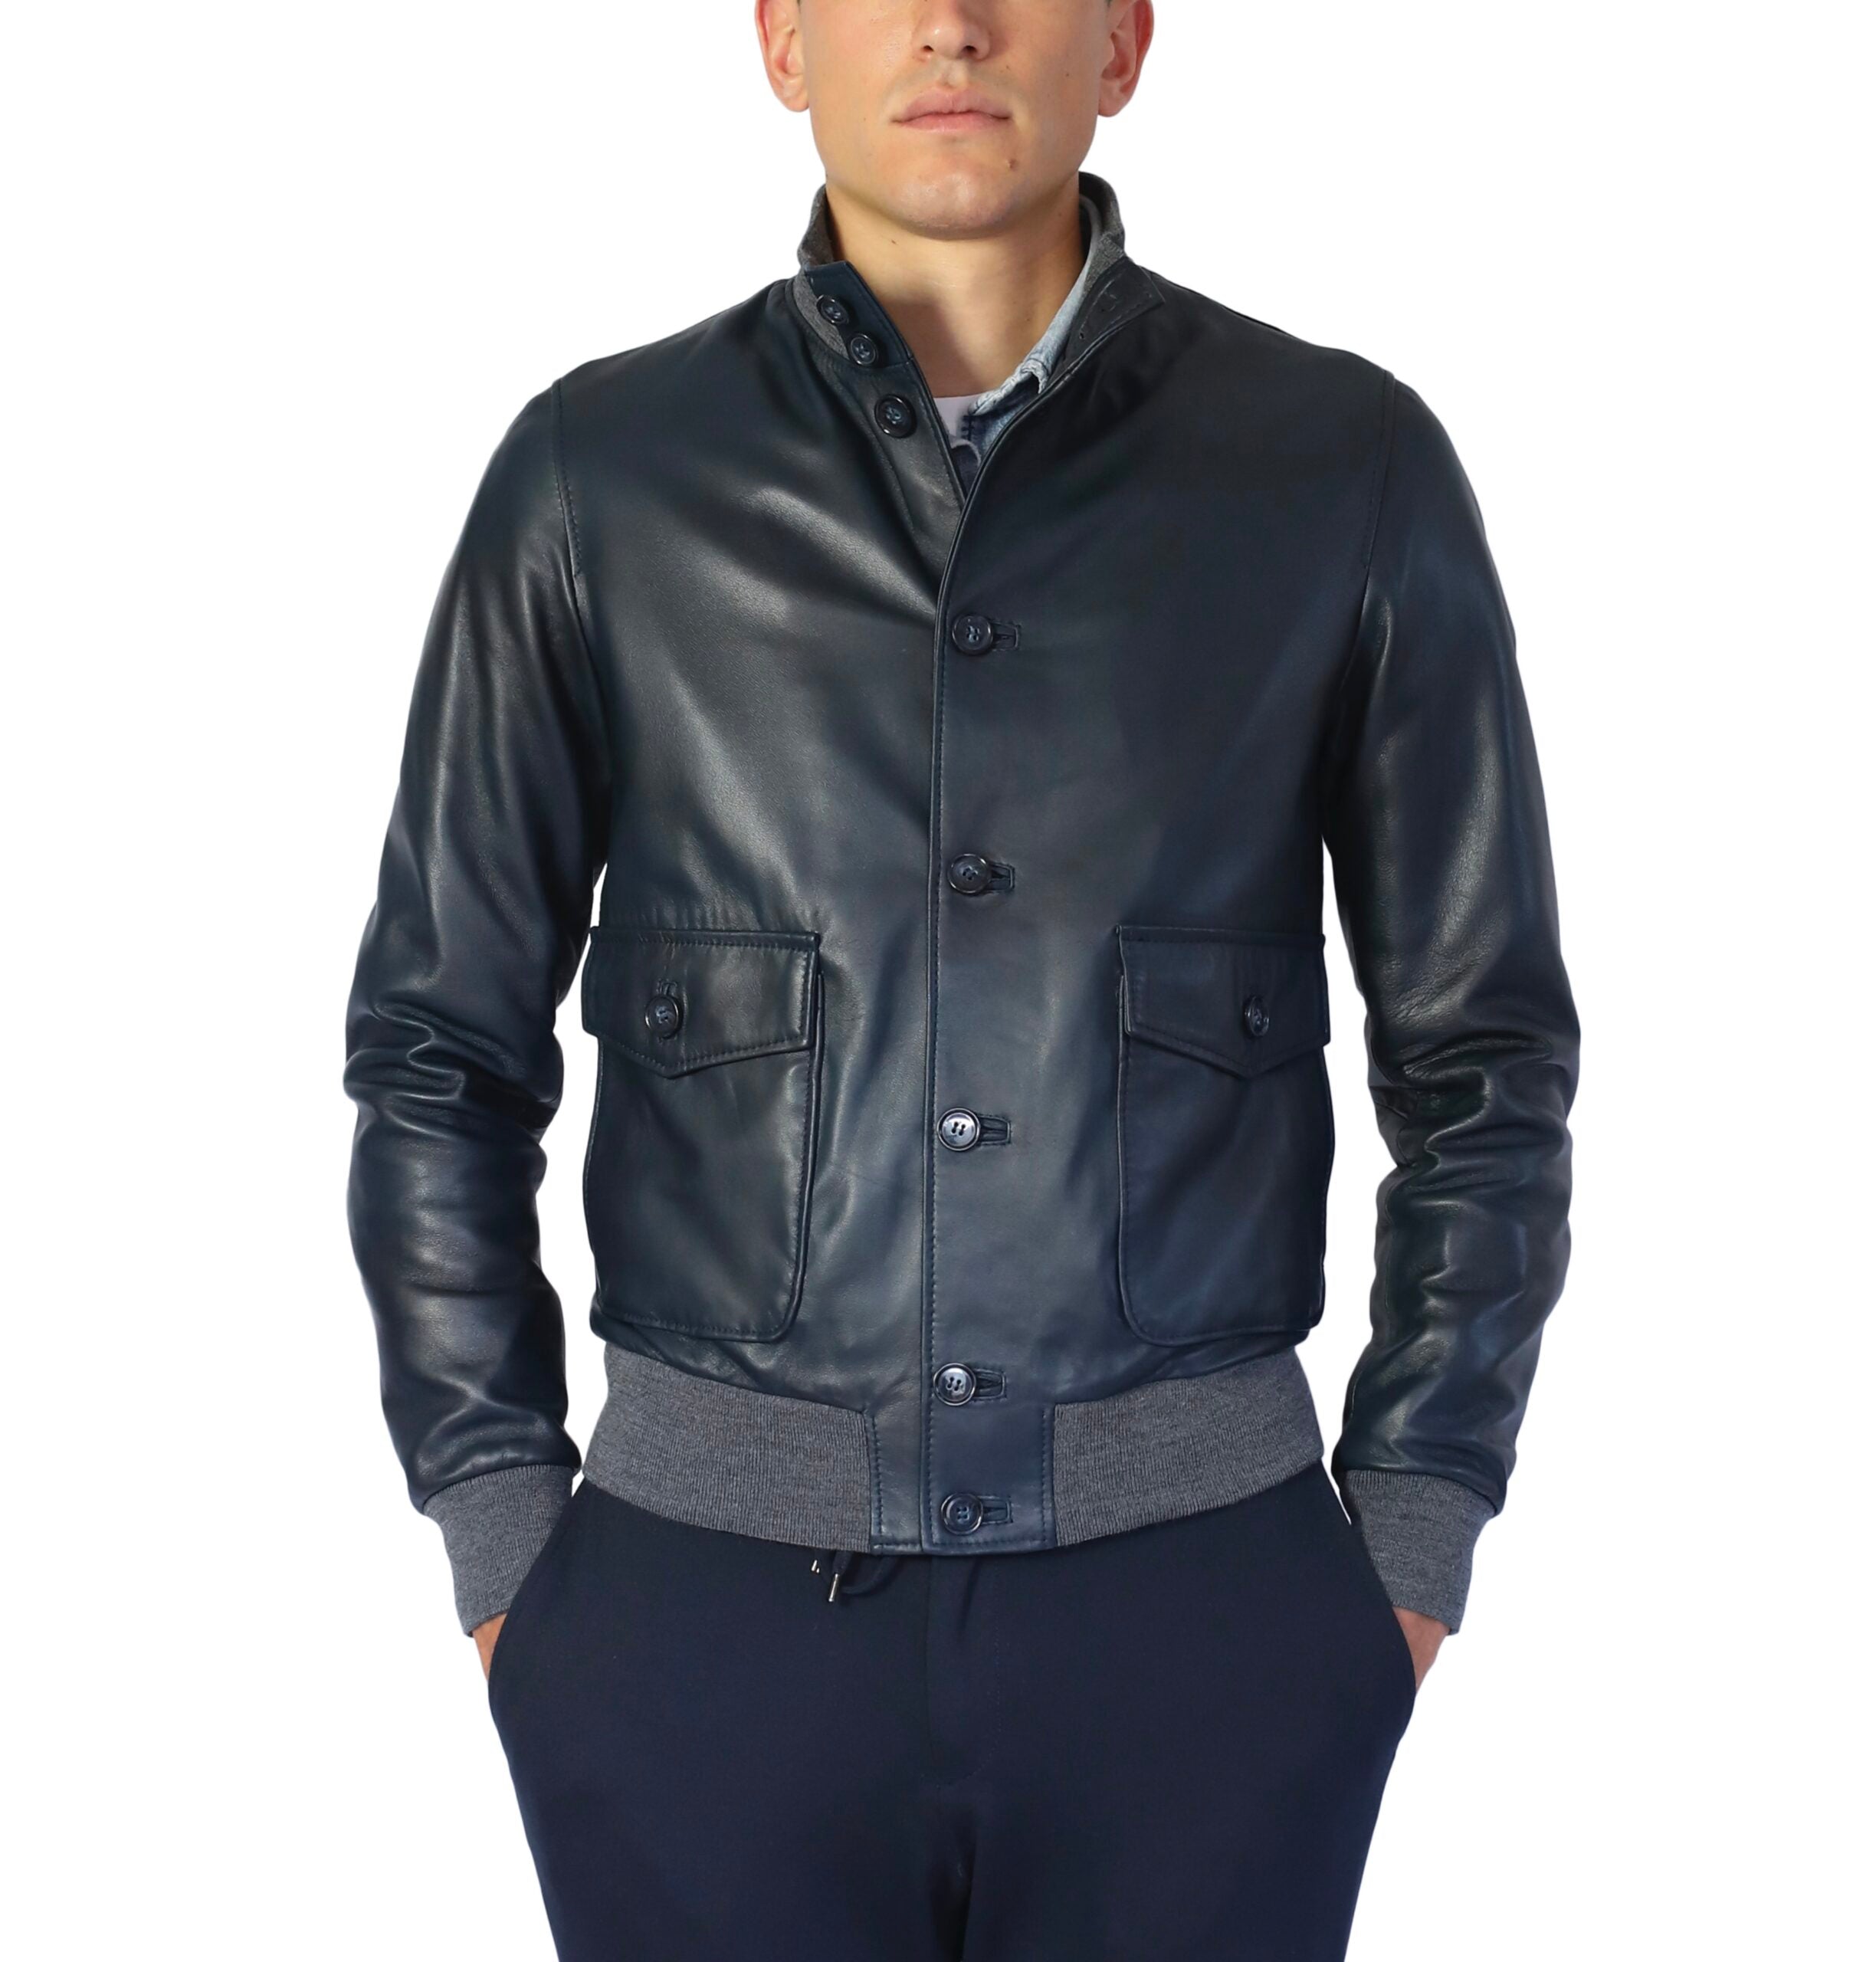 98LUXBL leather jacket